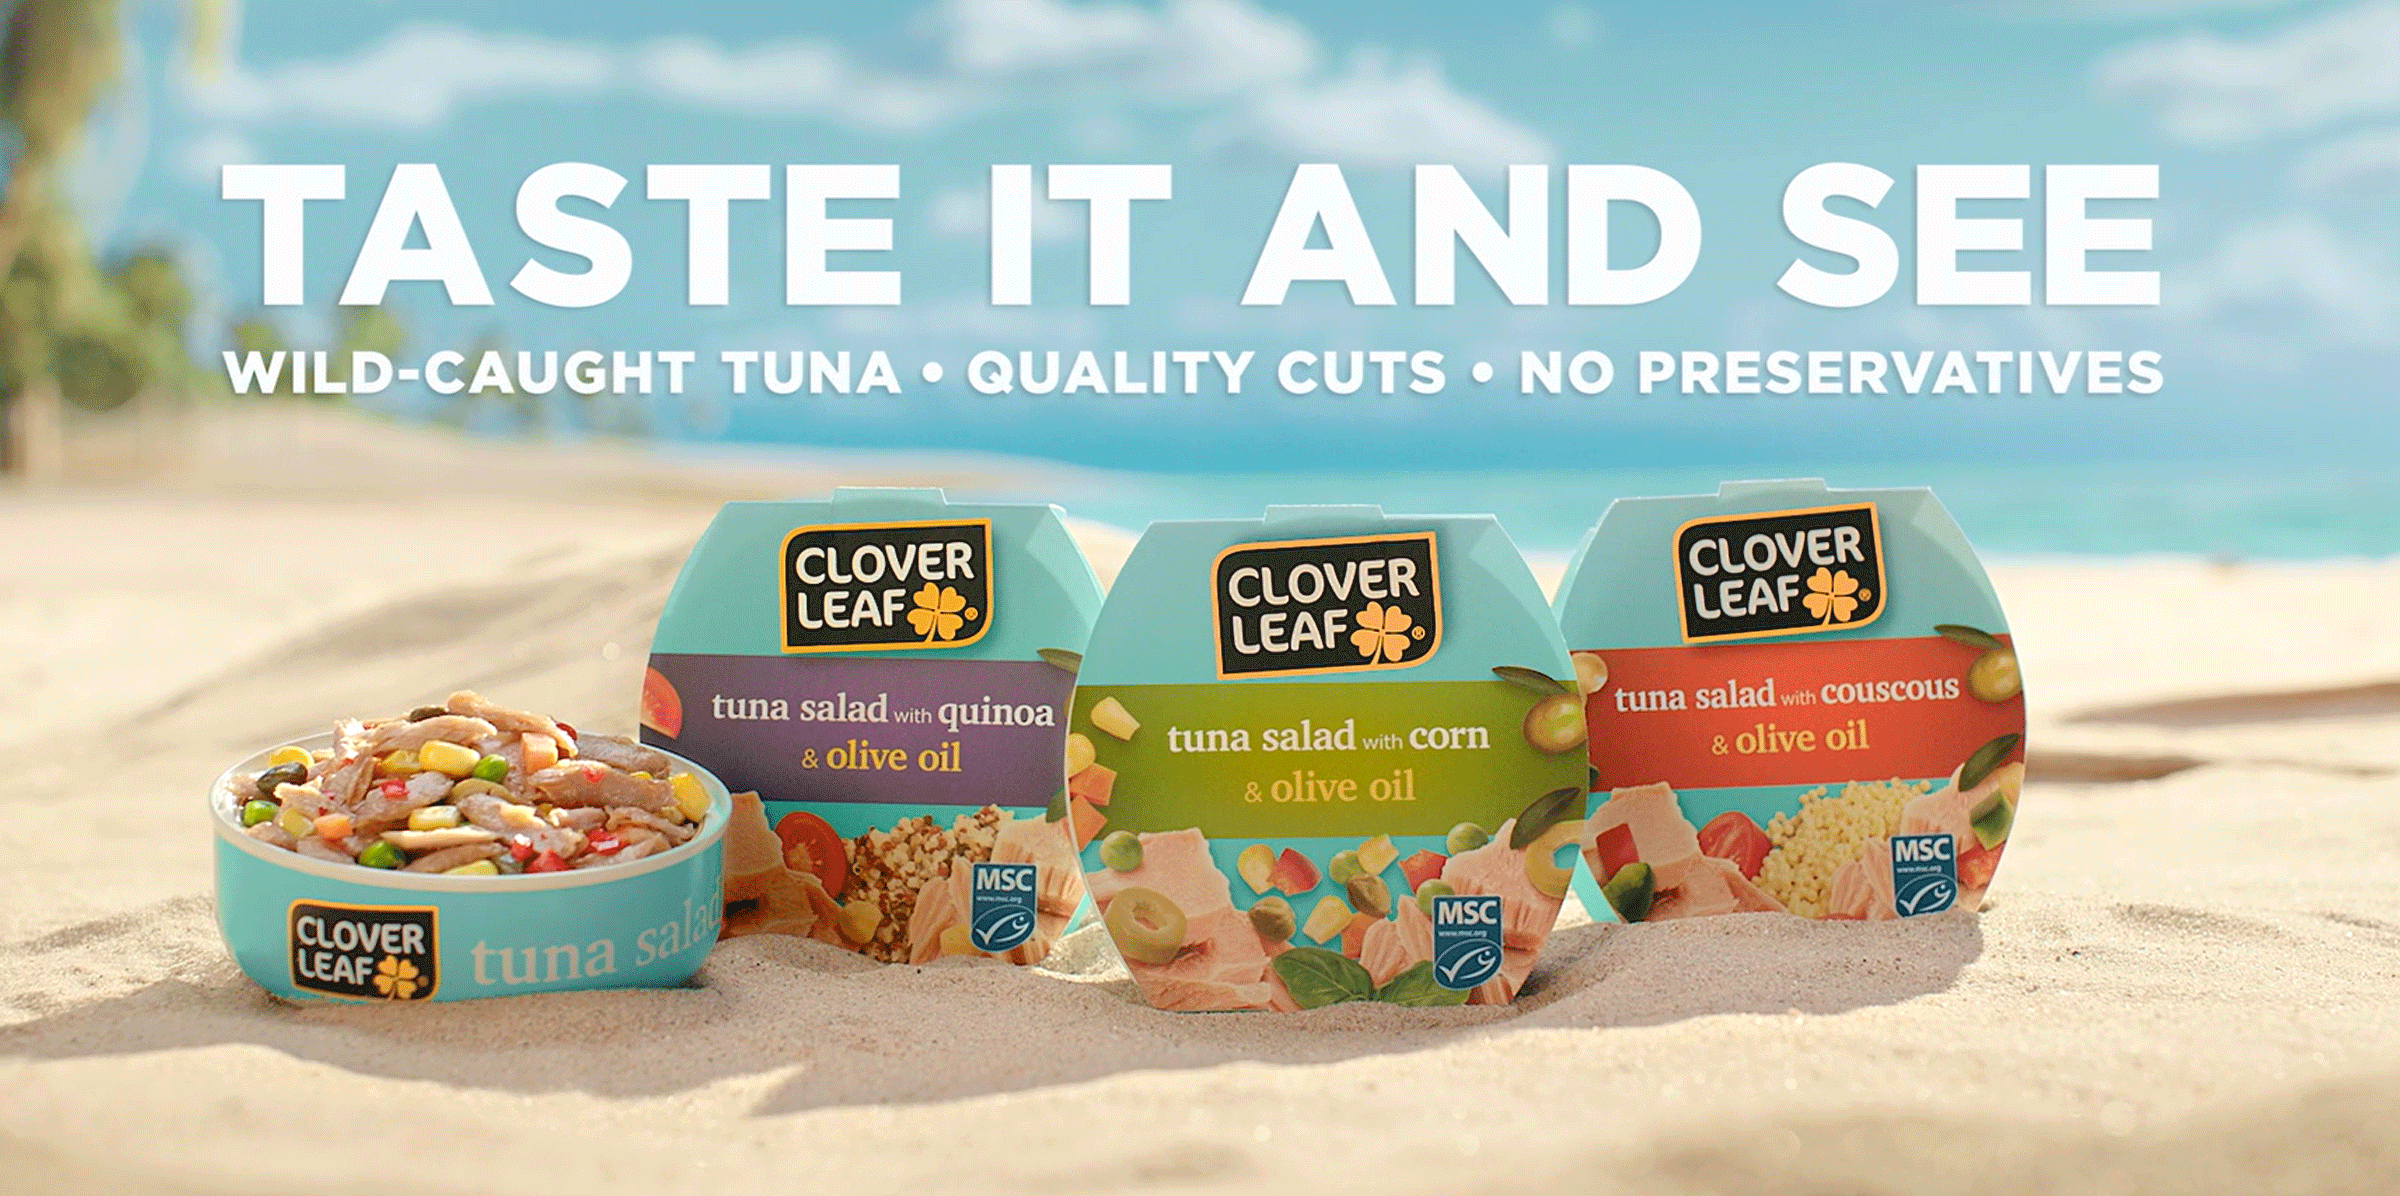 Clover Leaf's Tuna Salad - Taste It And See.